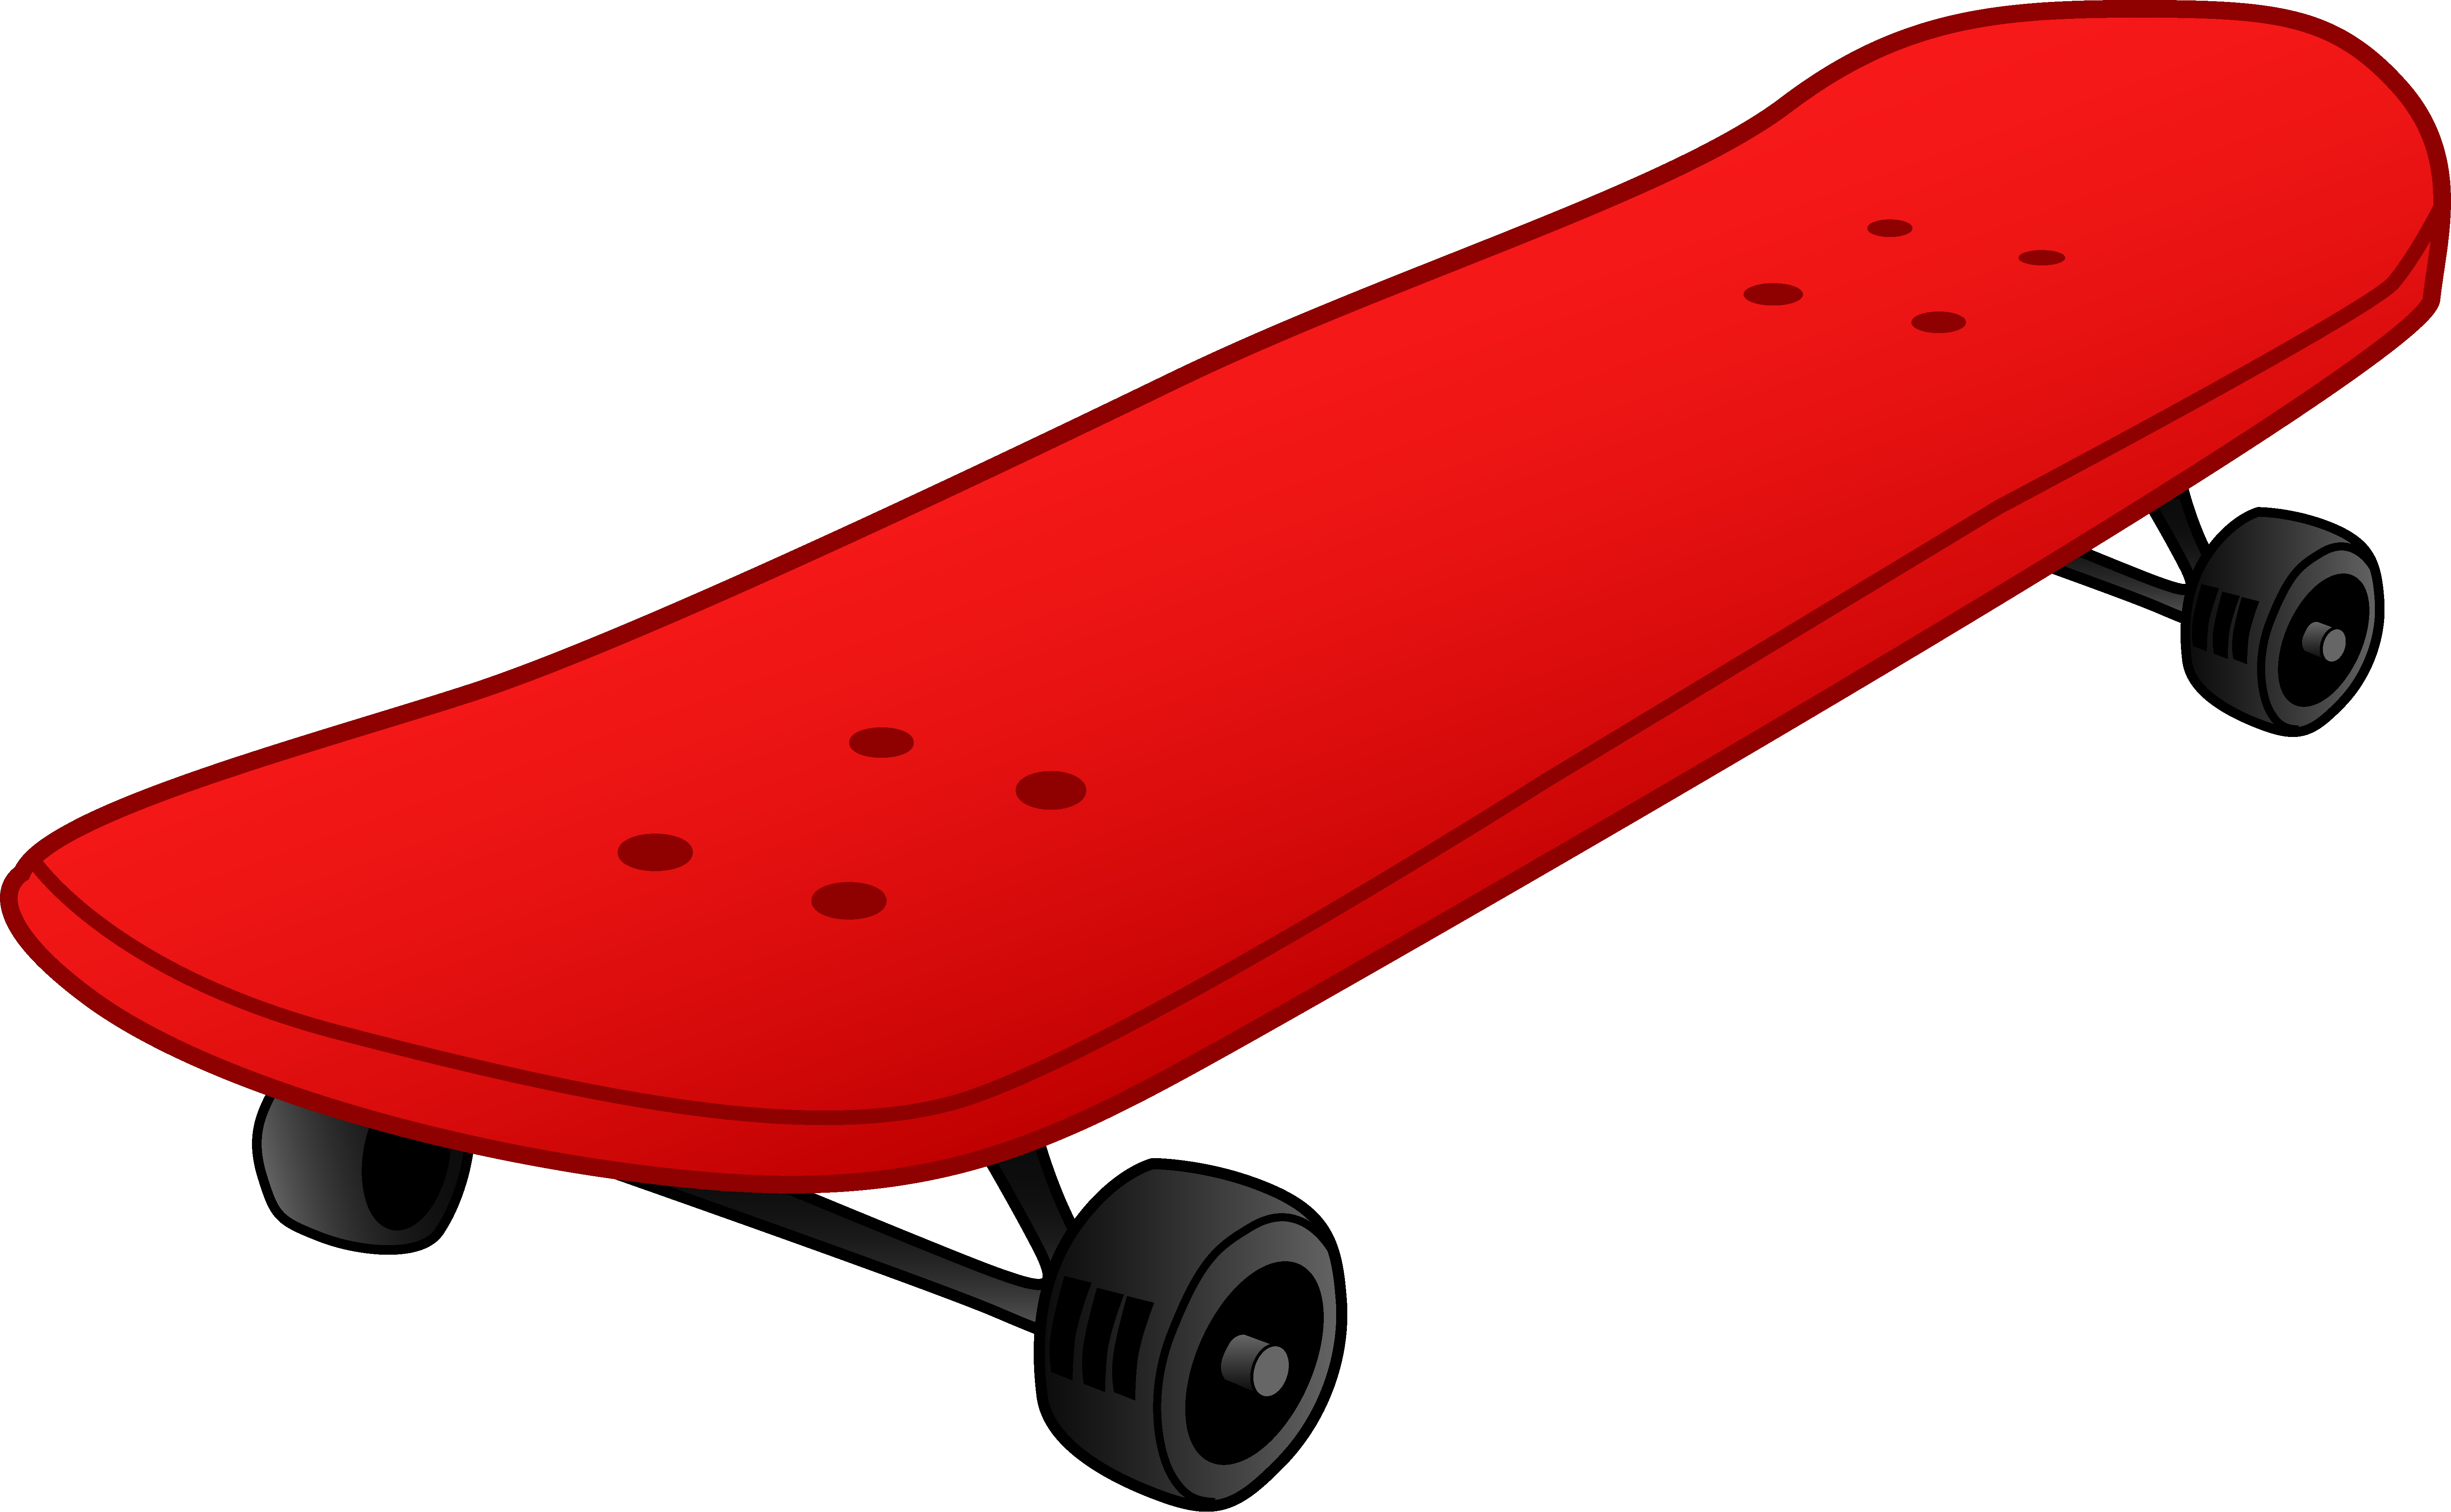 Skateboard Sport Equipment PNG Image File